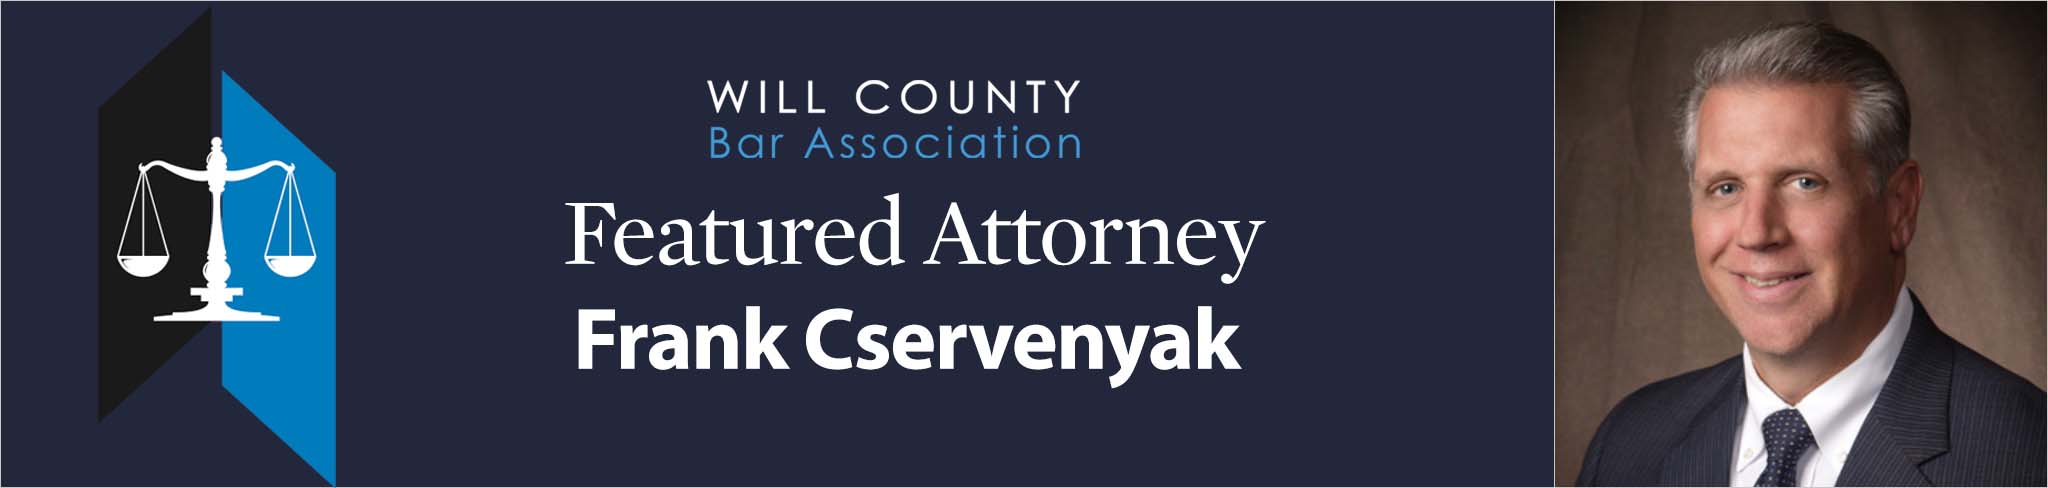 Feature Attorney Frank Cservenyak